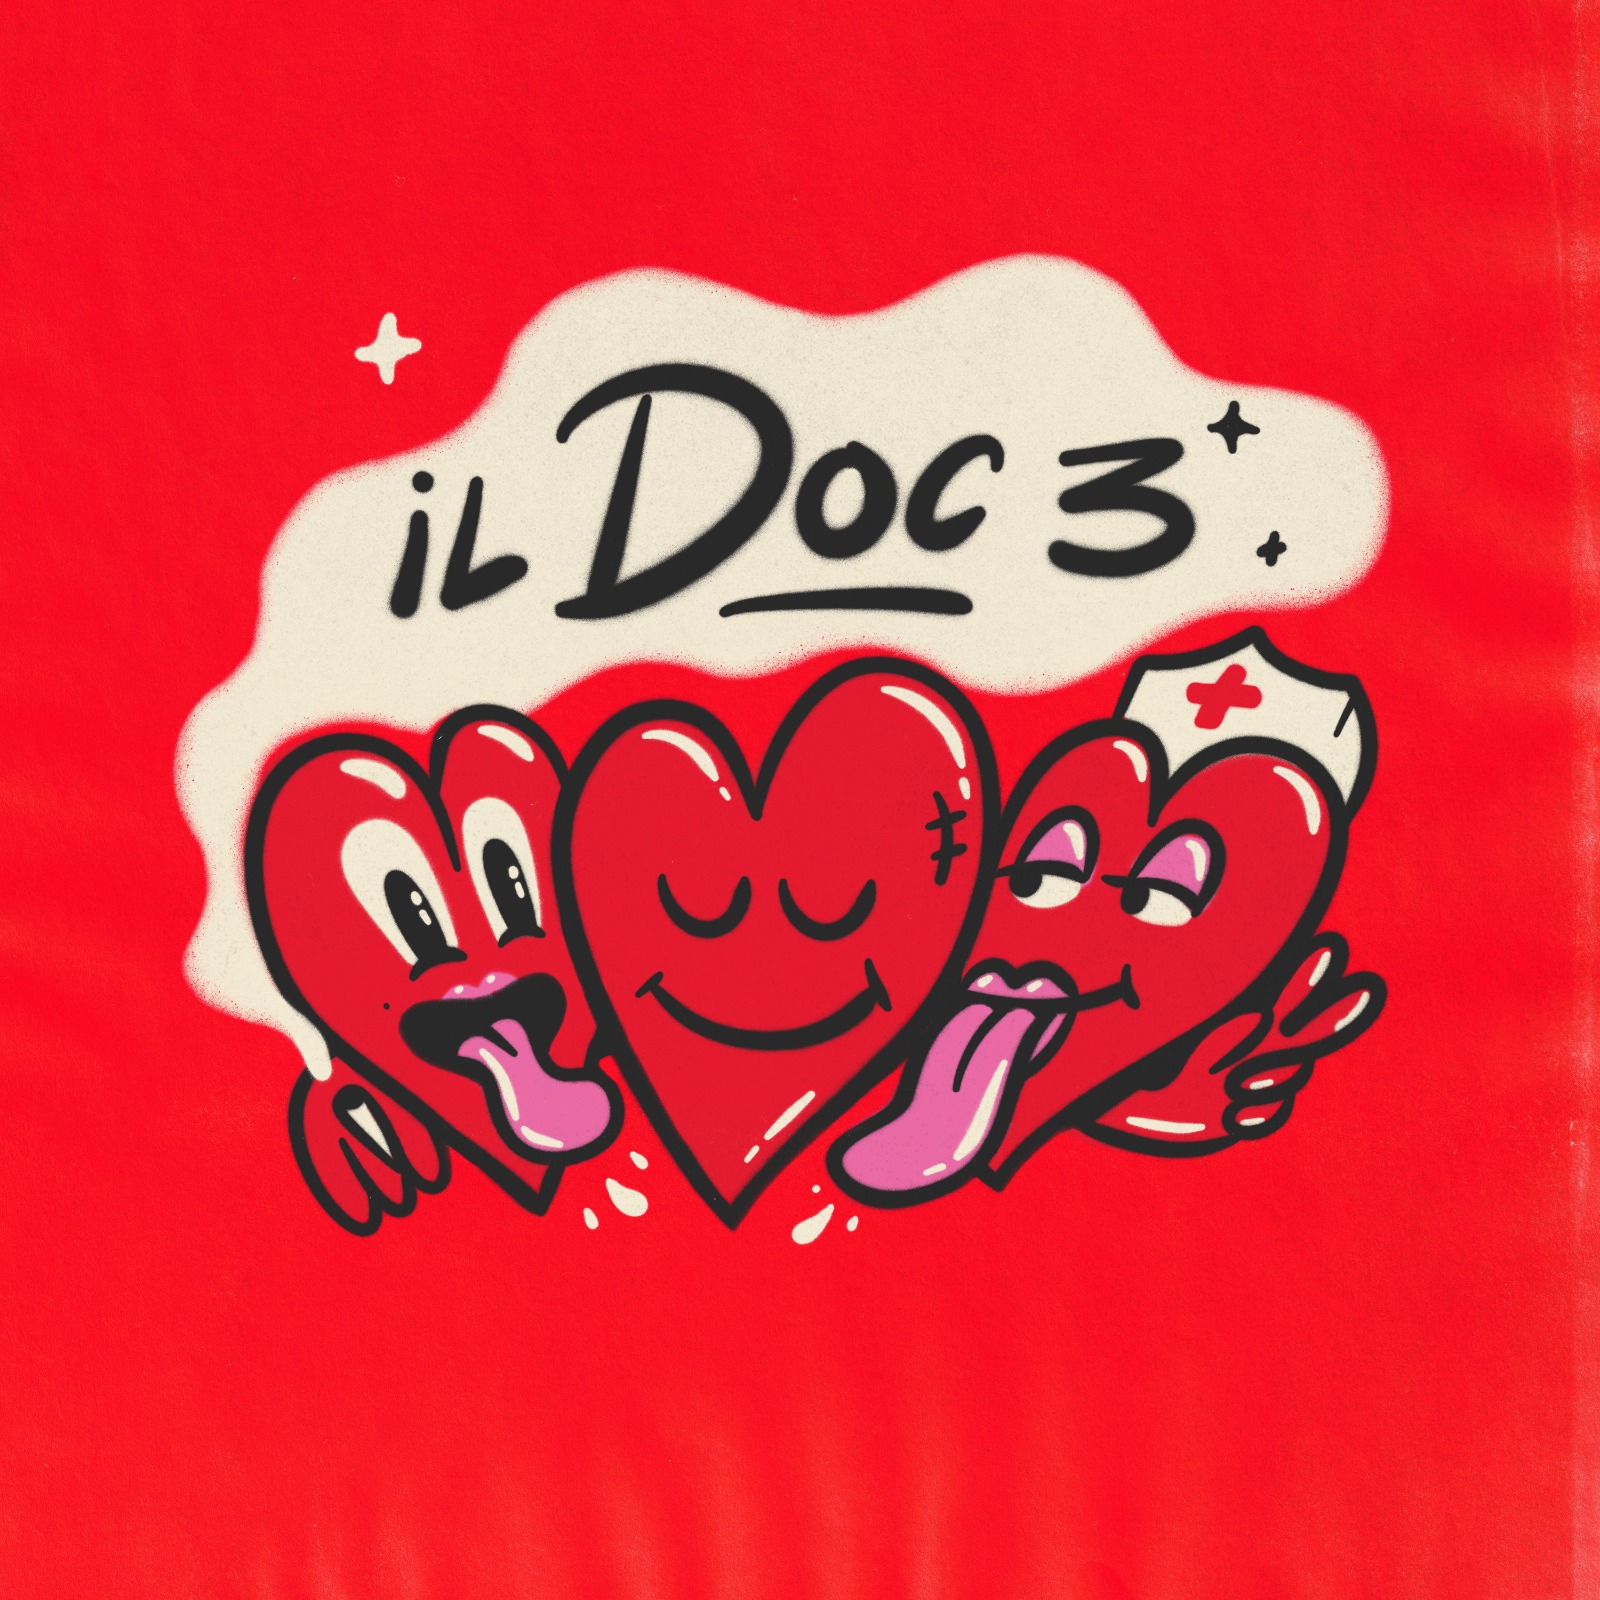 VILLABANKS presentano il singolo “IL DOC 3”